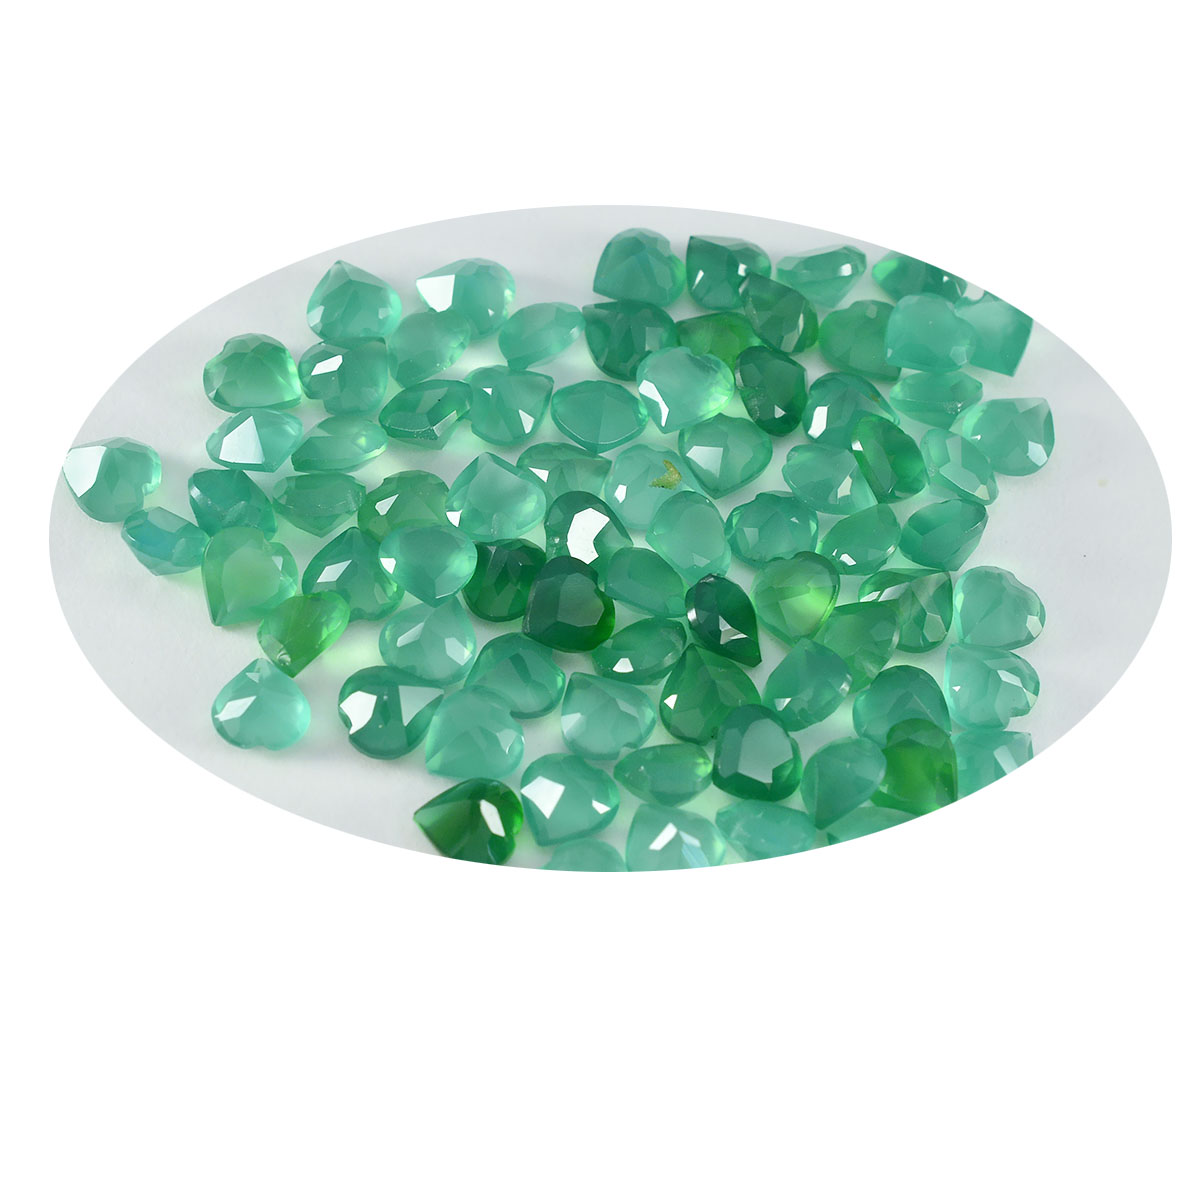 Riyogems 1 pièce d'onyx vert véritable à facettes 5x5mm en forme de cœur, pierre précieuse en vrac de qualité attrayante